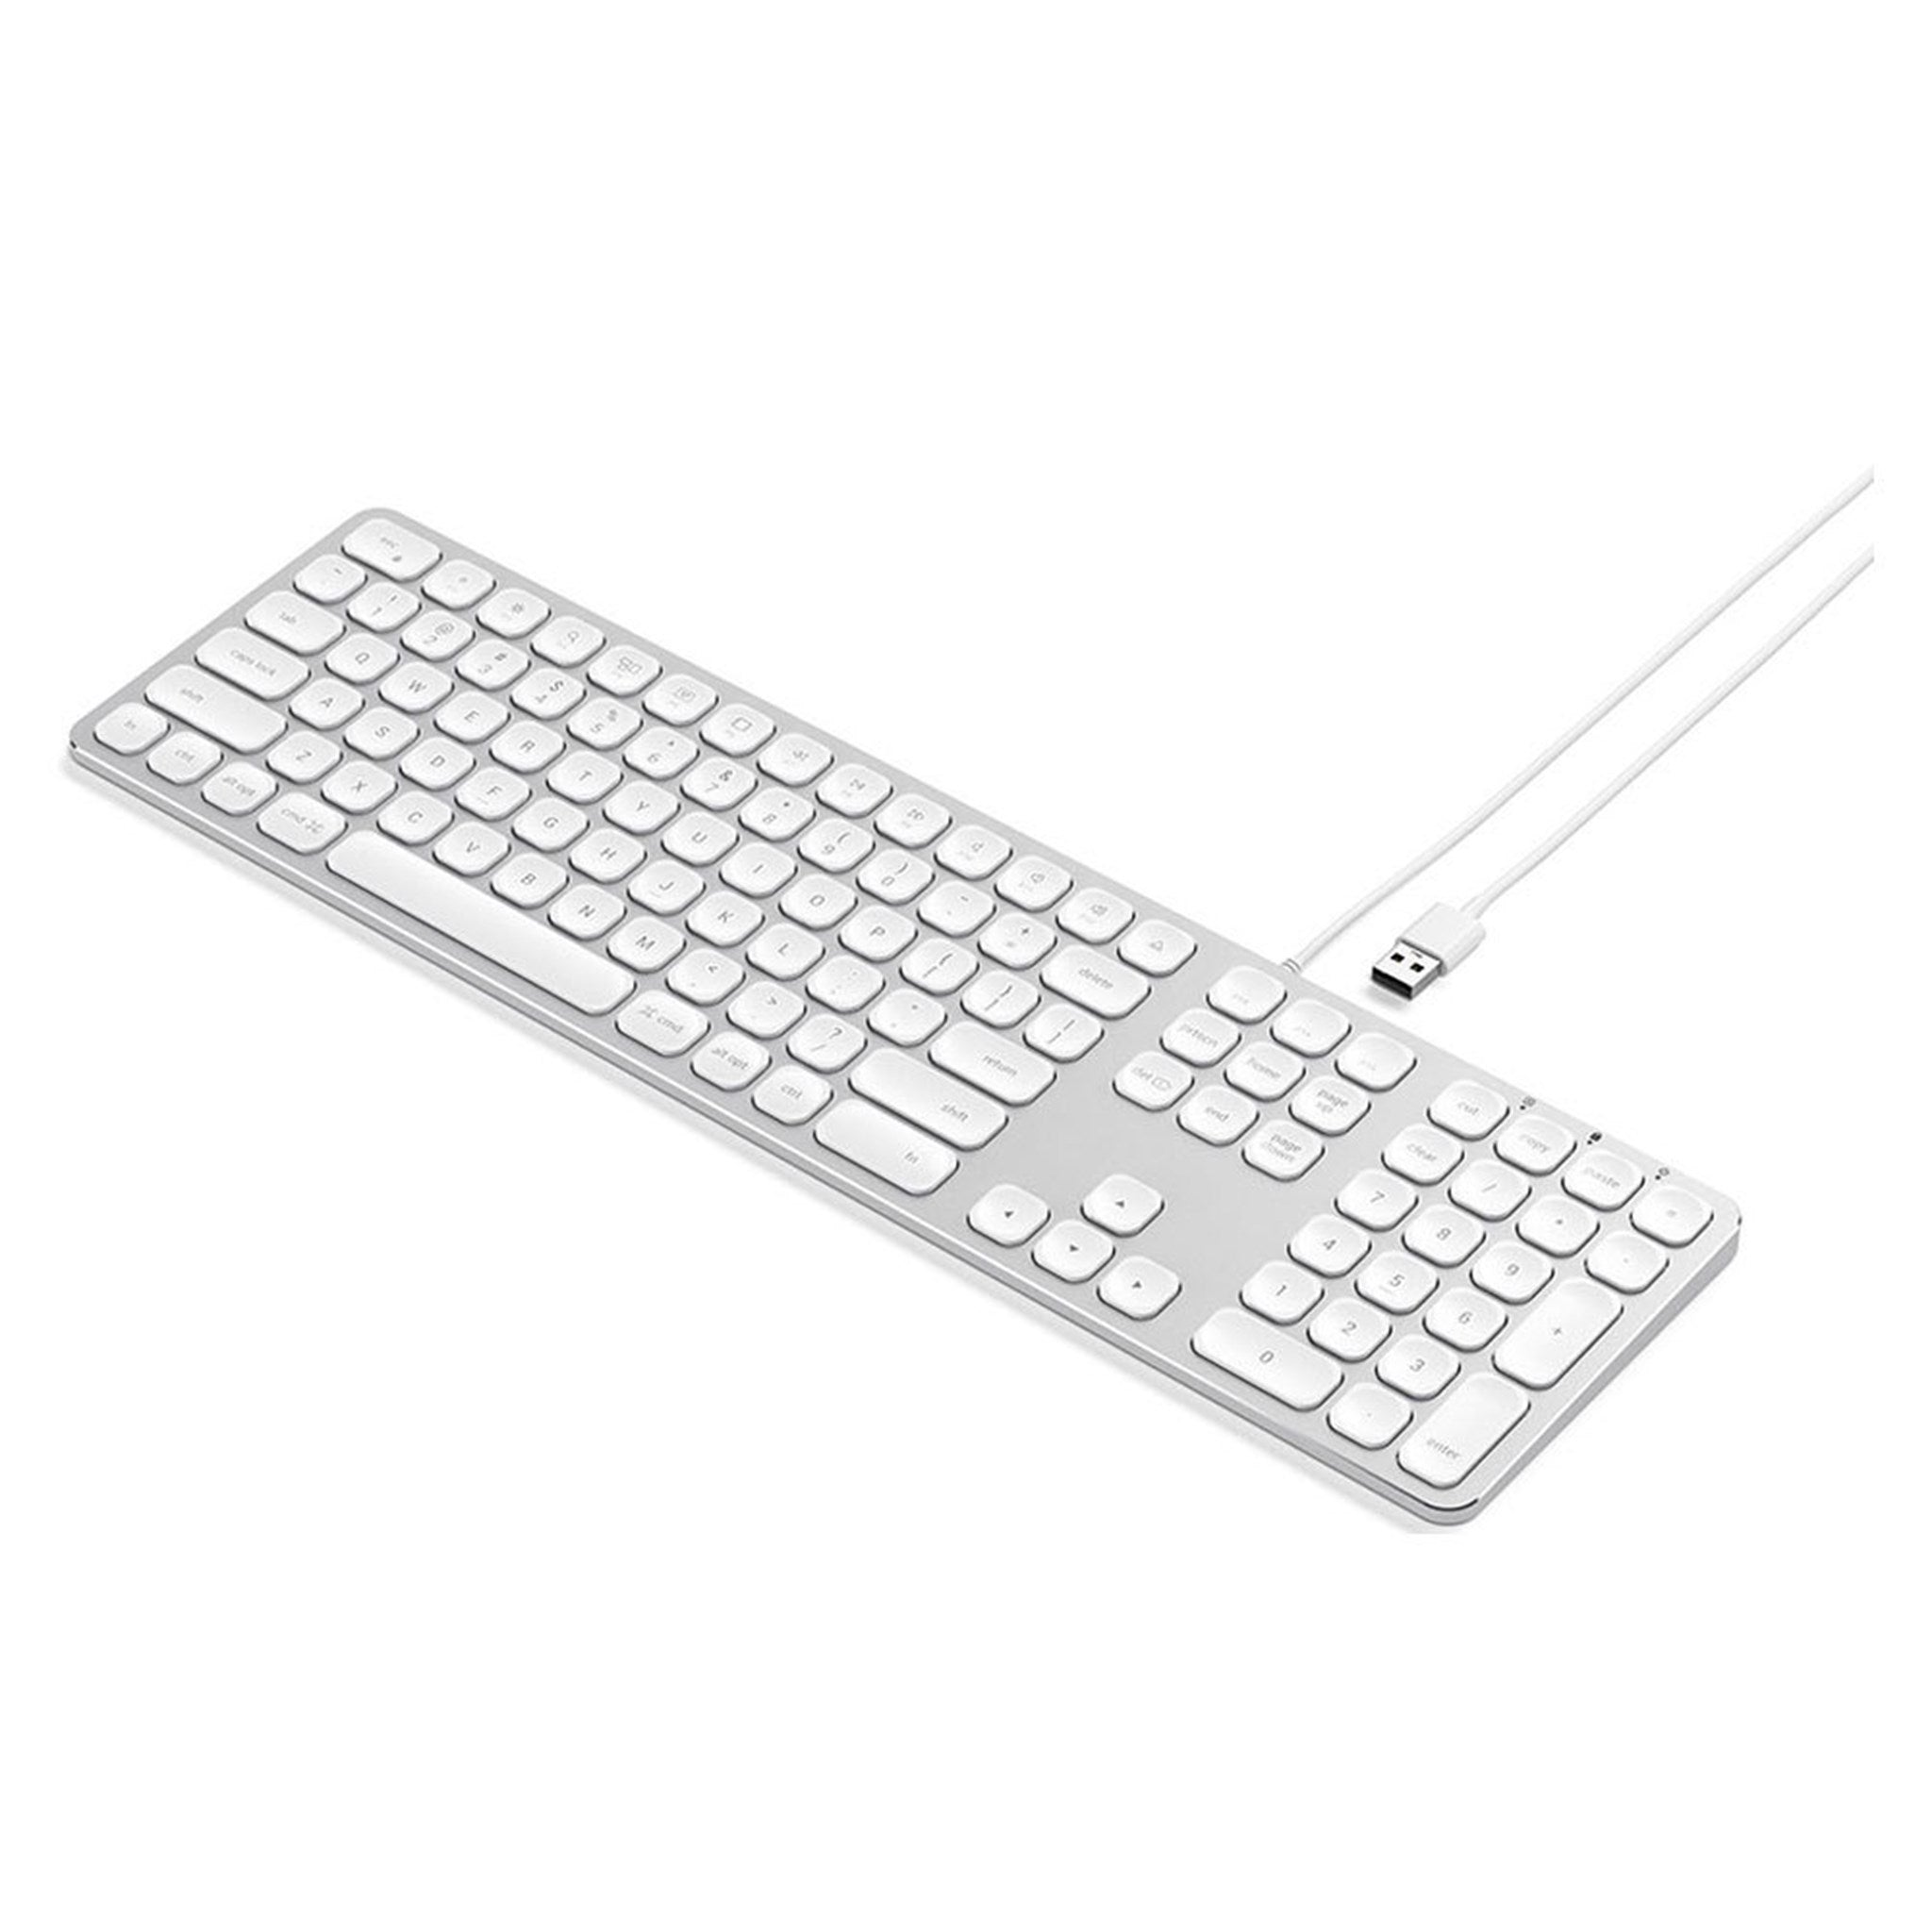 Satechi-tastatur-til-MacBook-og-iMac-ST-AMWKS-ND-2.jpg